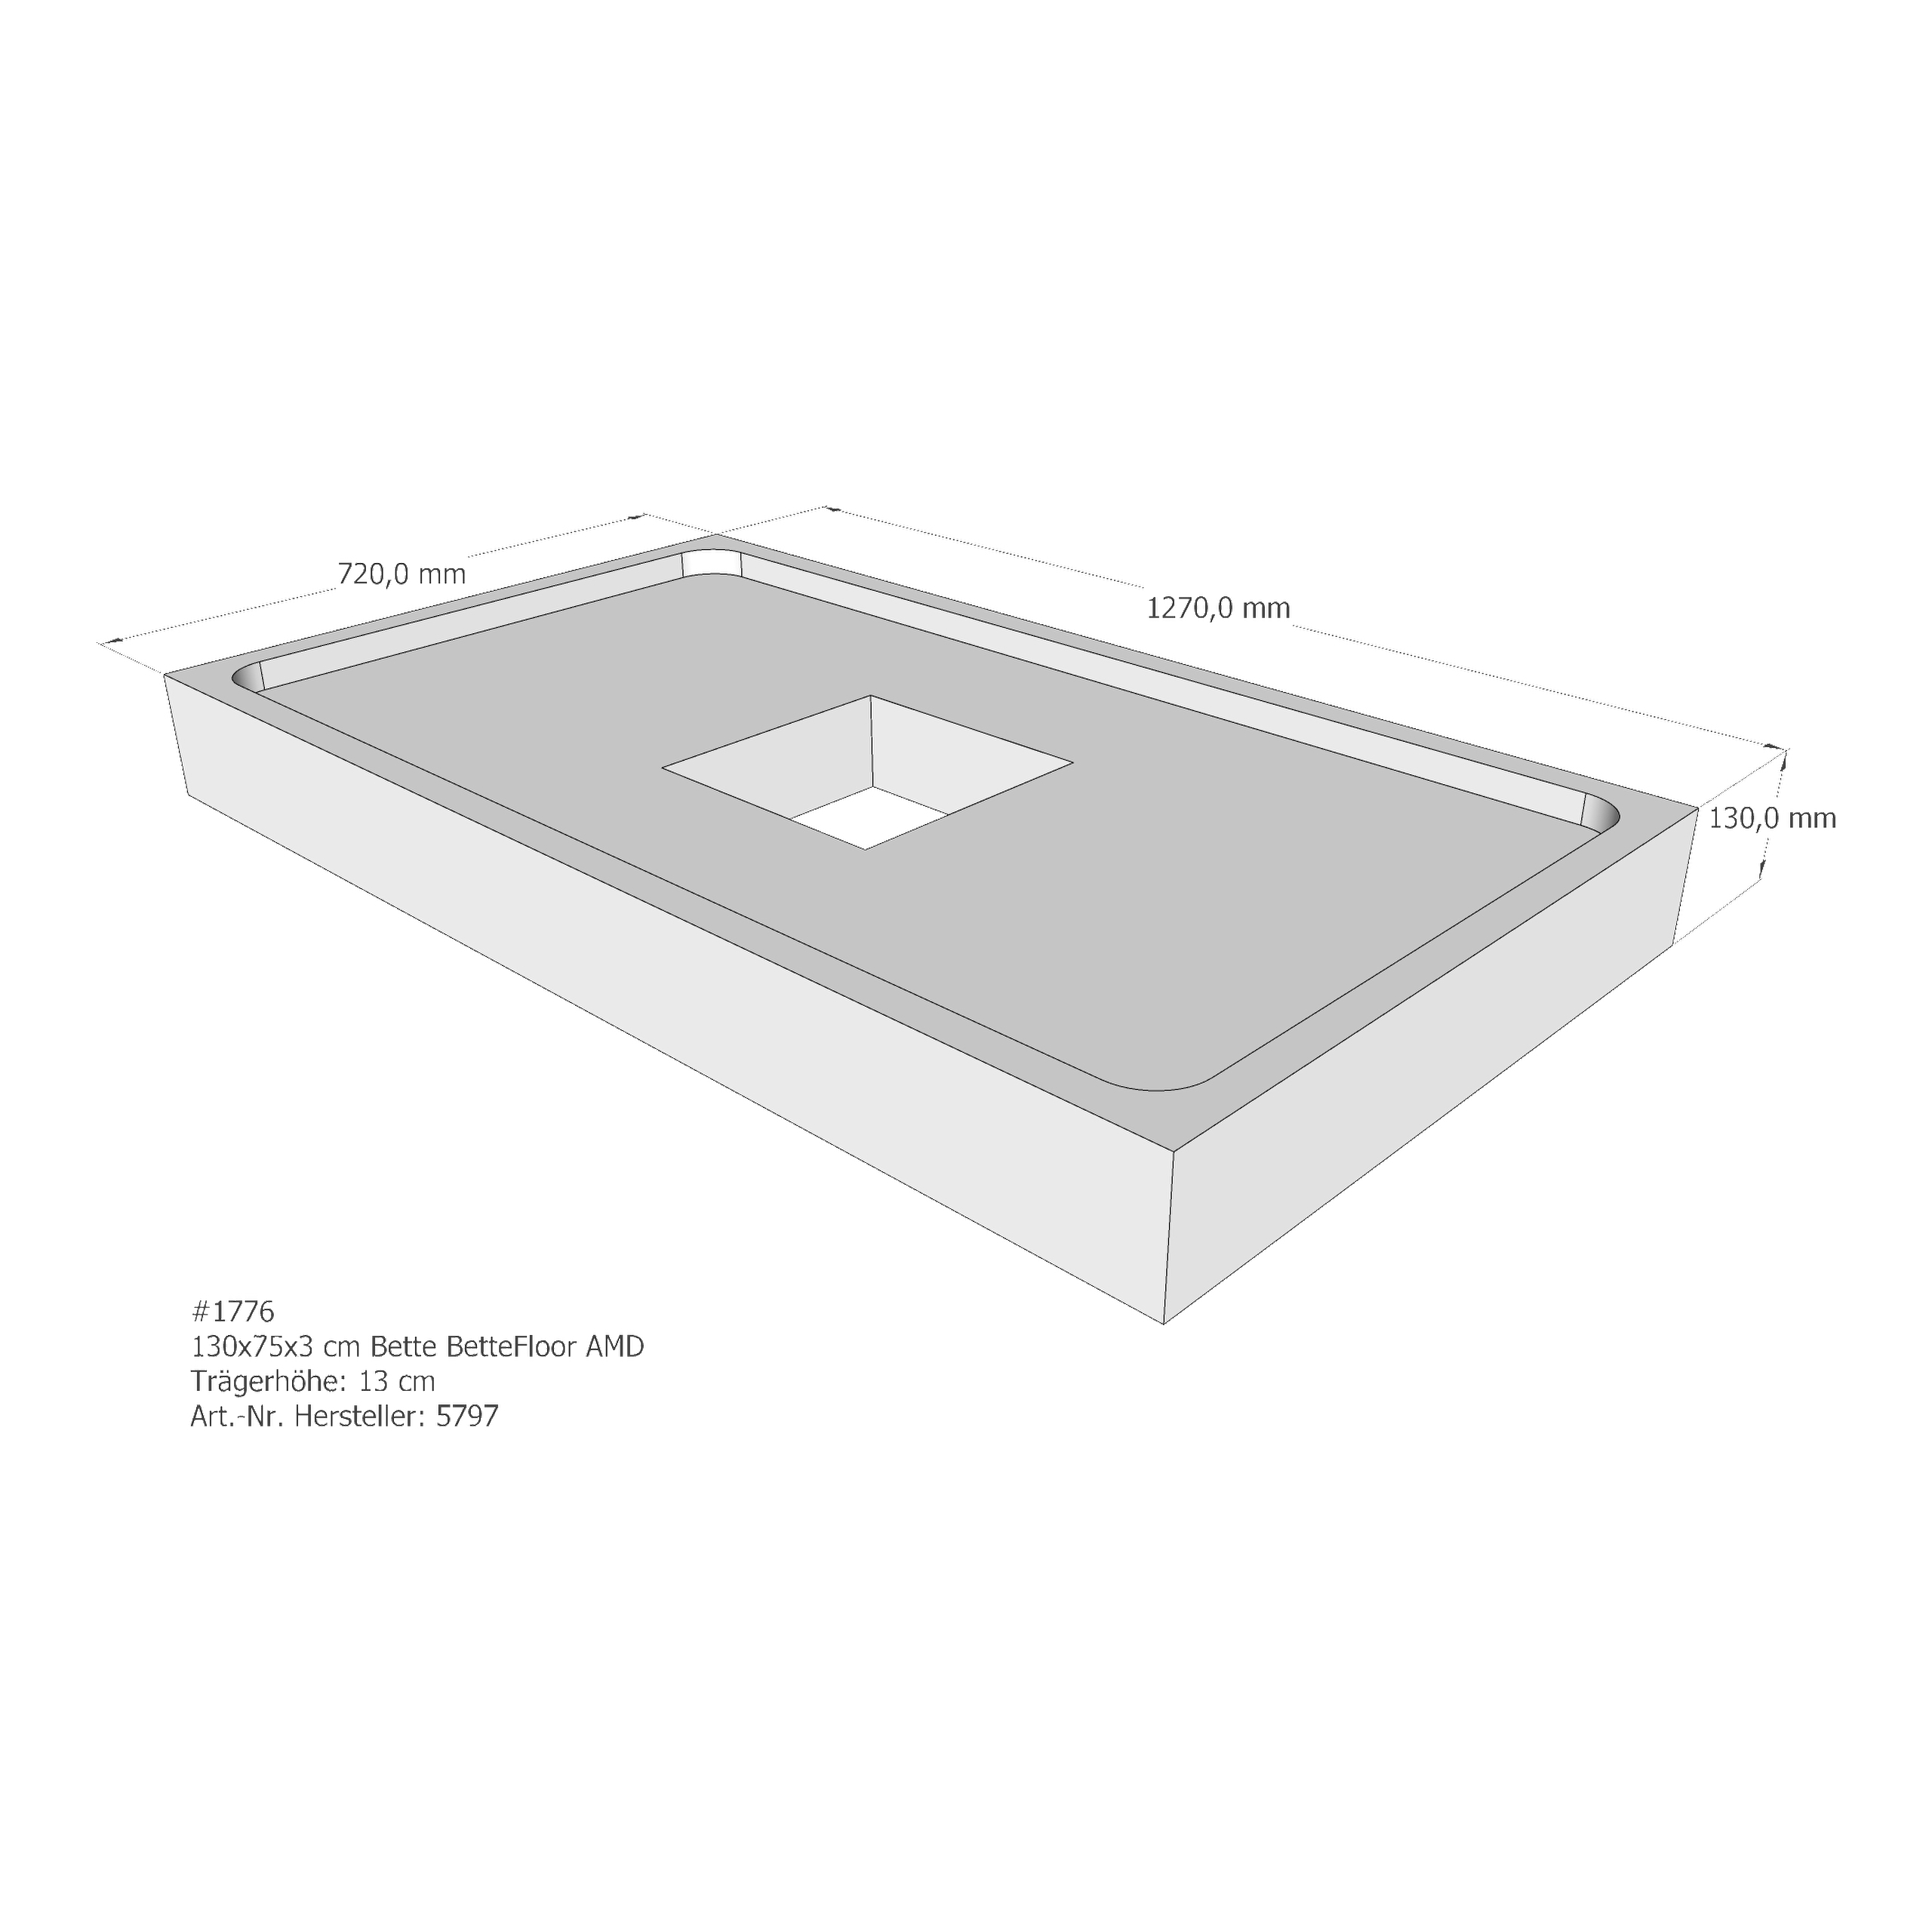 Duschwannenträger Bette BetteFloor 130x75x3 cm AMD